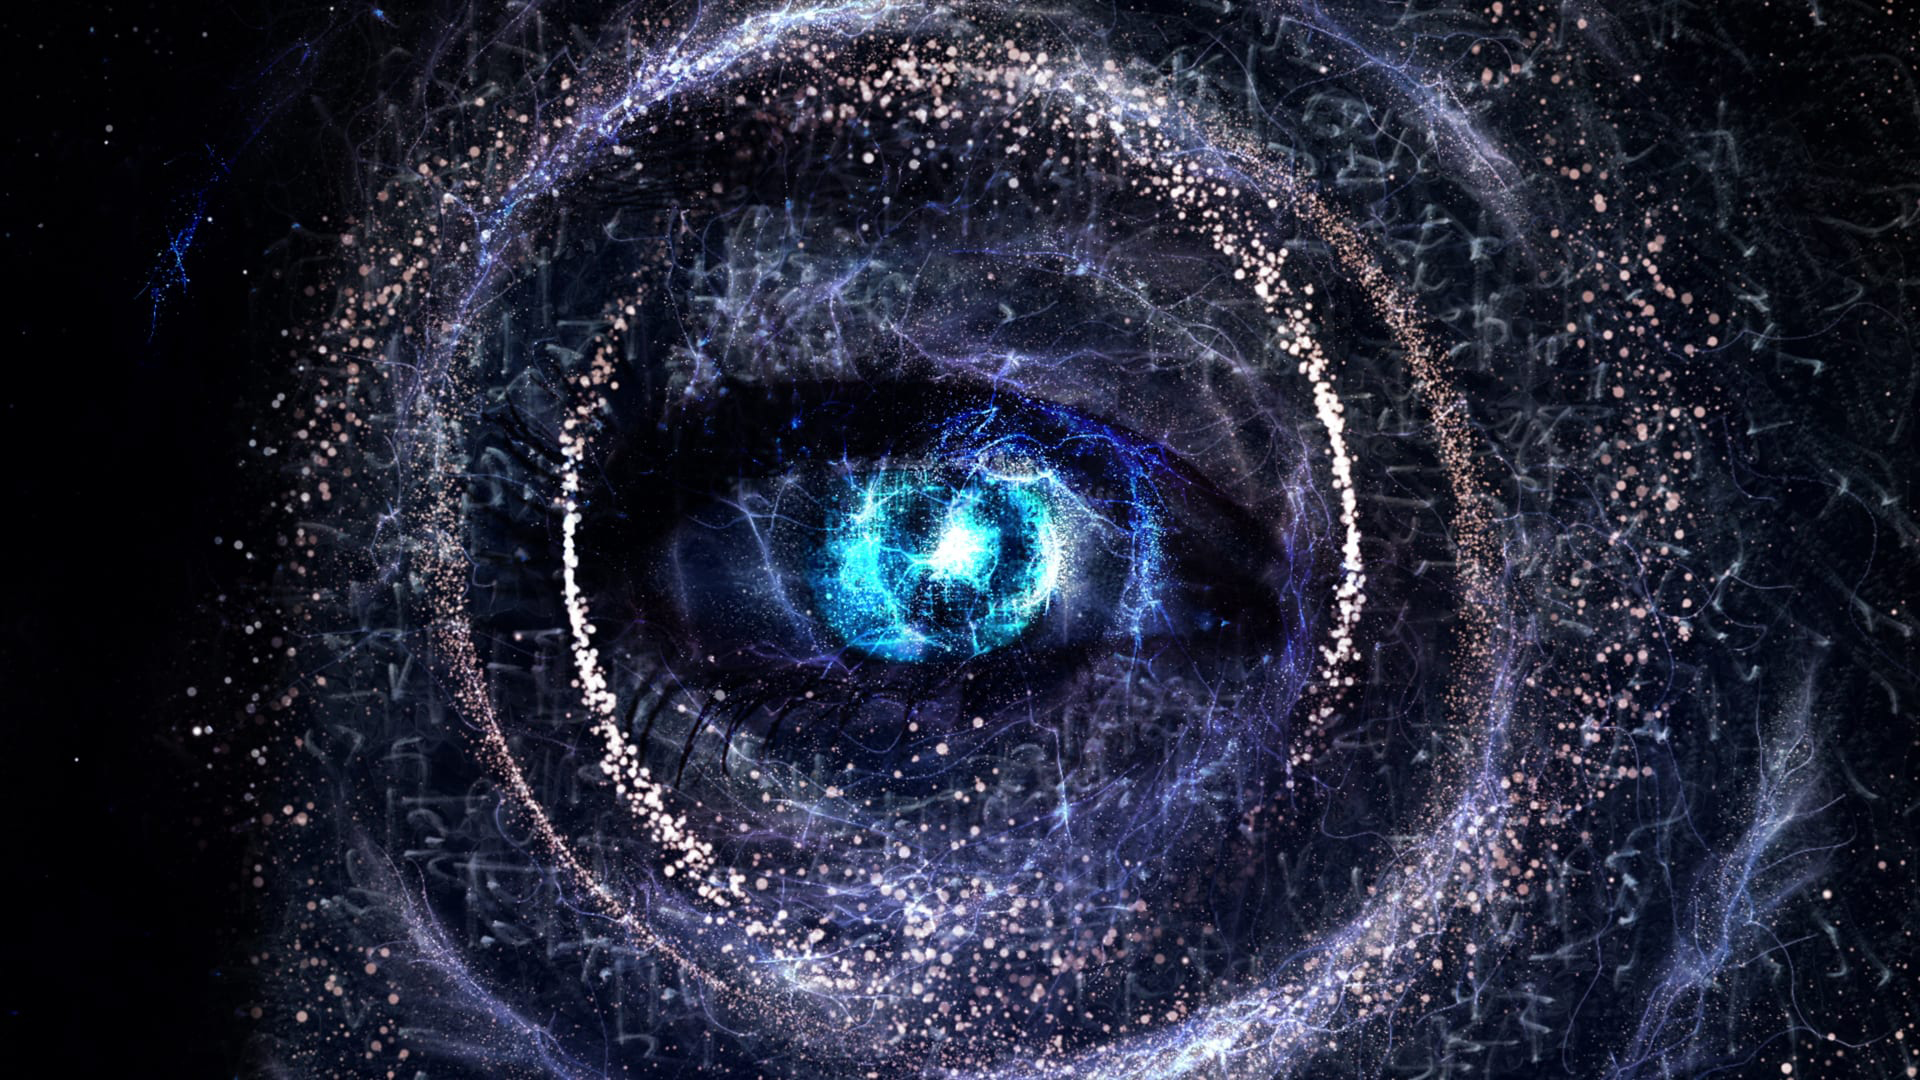 Глаз бога тг glazbog com. Космос в глазах. Око Бога. Вселенная в глазах. Глаз Вселенной.